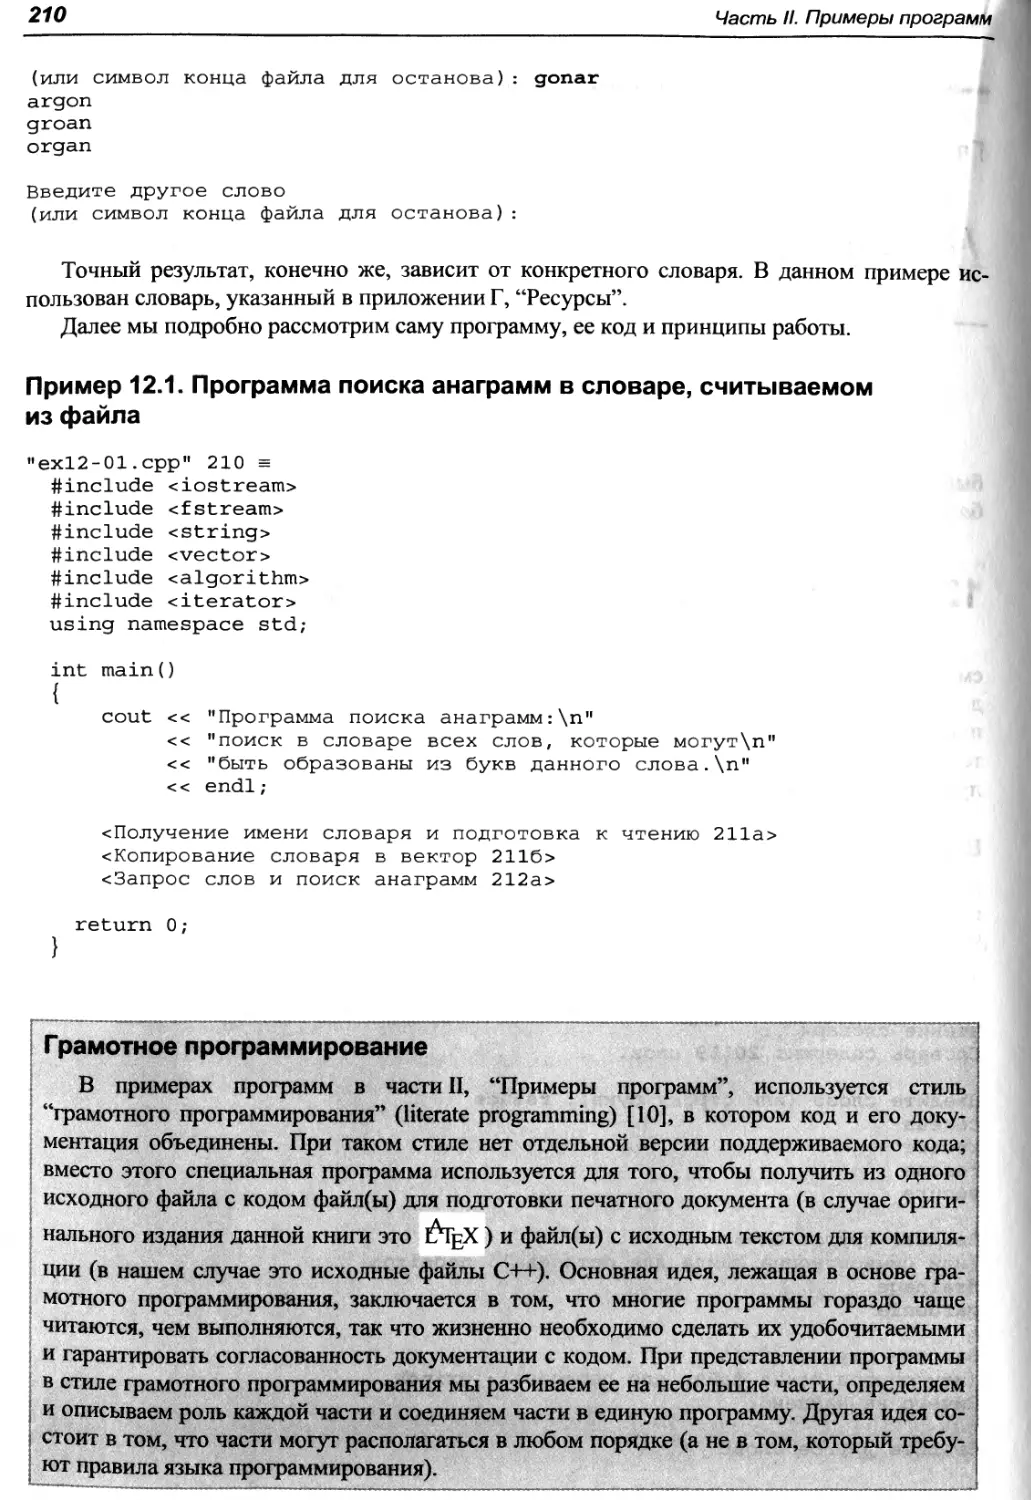 Пример 12.1. Программа поиска анаграмм в словаре, считываемом из файла